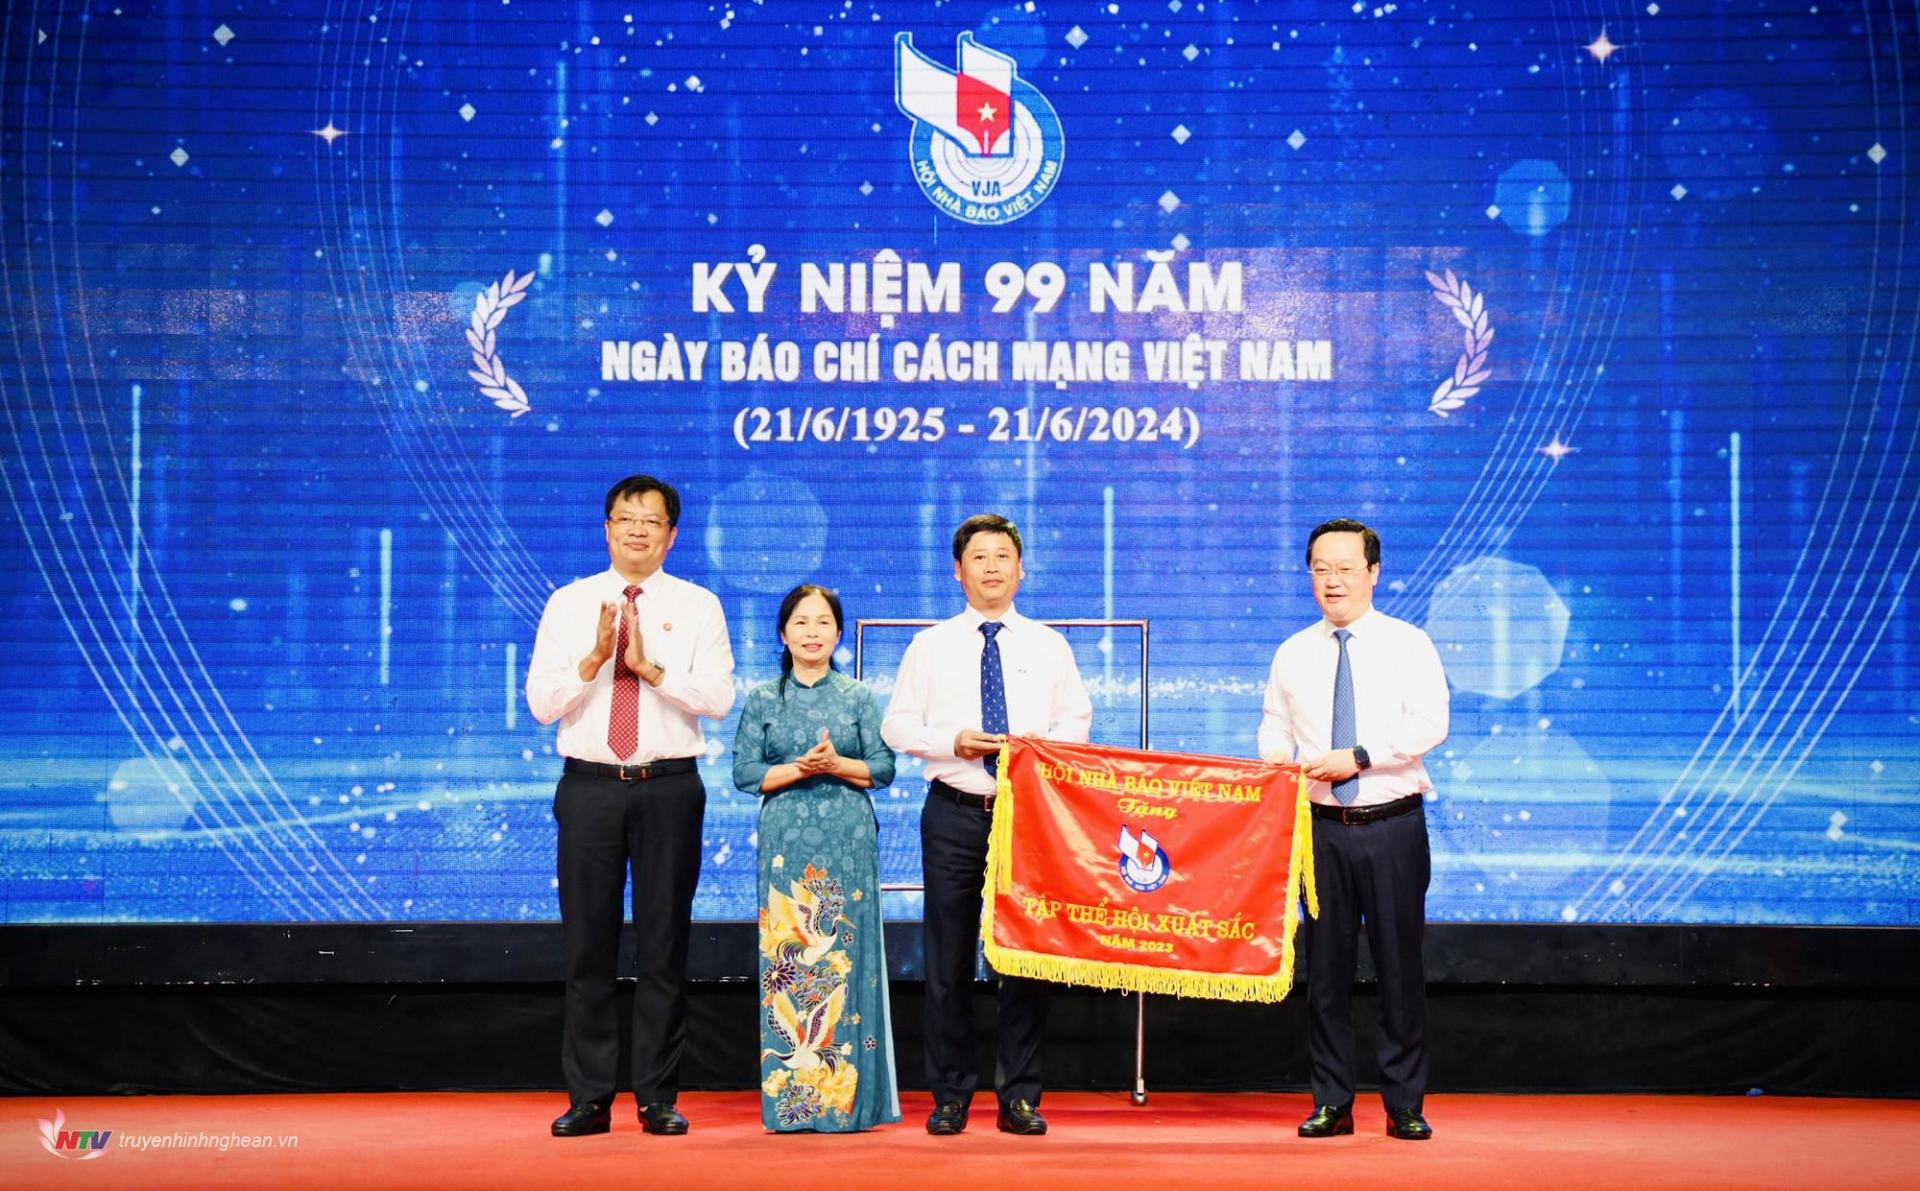 Đồng chí Nguyễn Đức Trung - Phó Bí thư Tỉnh ủy, Chủ tịch UBND tỉnh trao cờ Tập thể xuất sắc cho Hội Nhà báo tỉnh